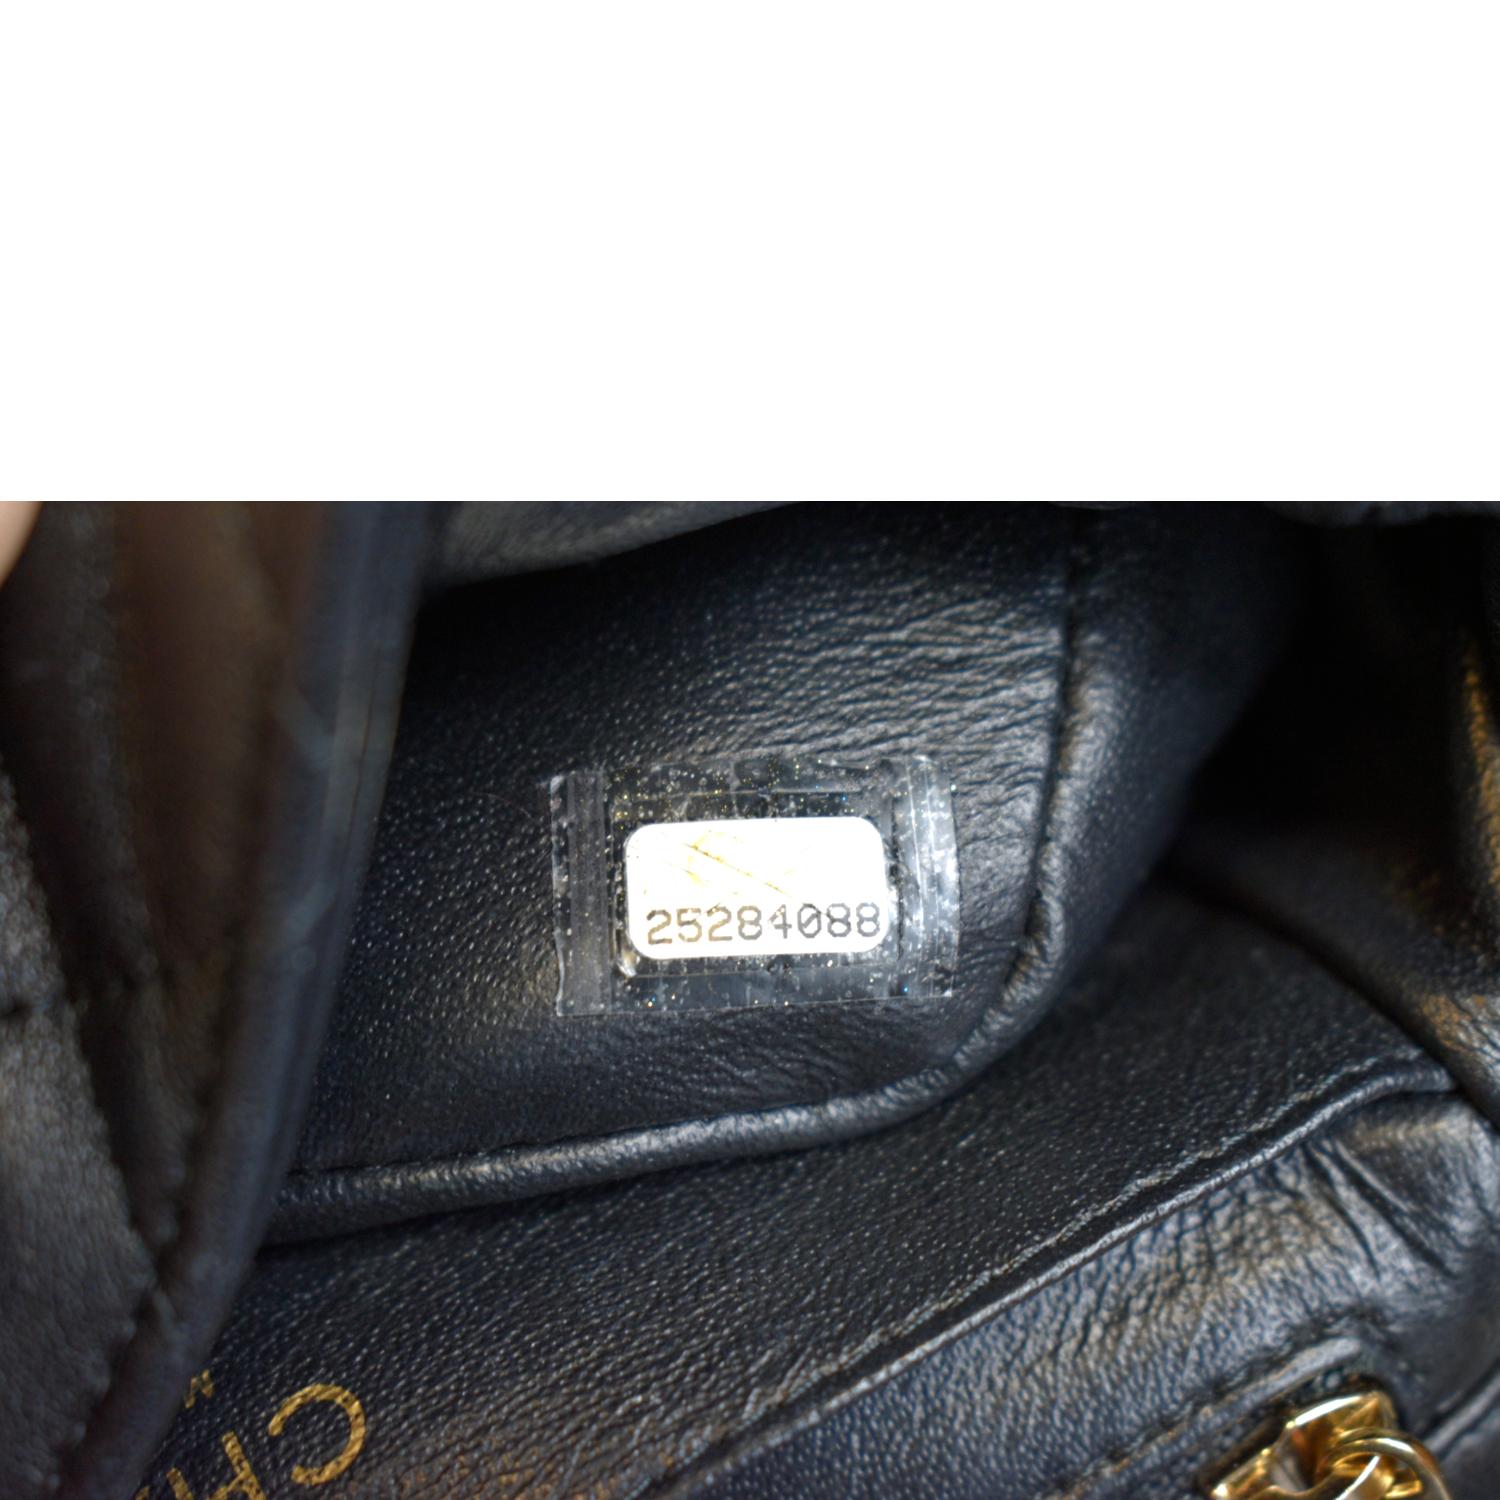 Chanel Mini Square Classic Lambskin Flap (SHG-wytJqr) – LuxeDH